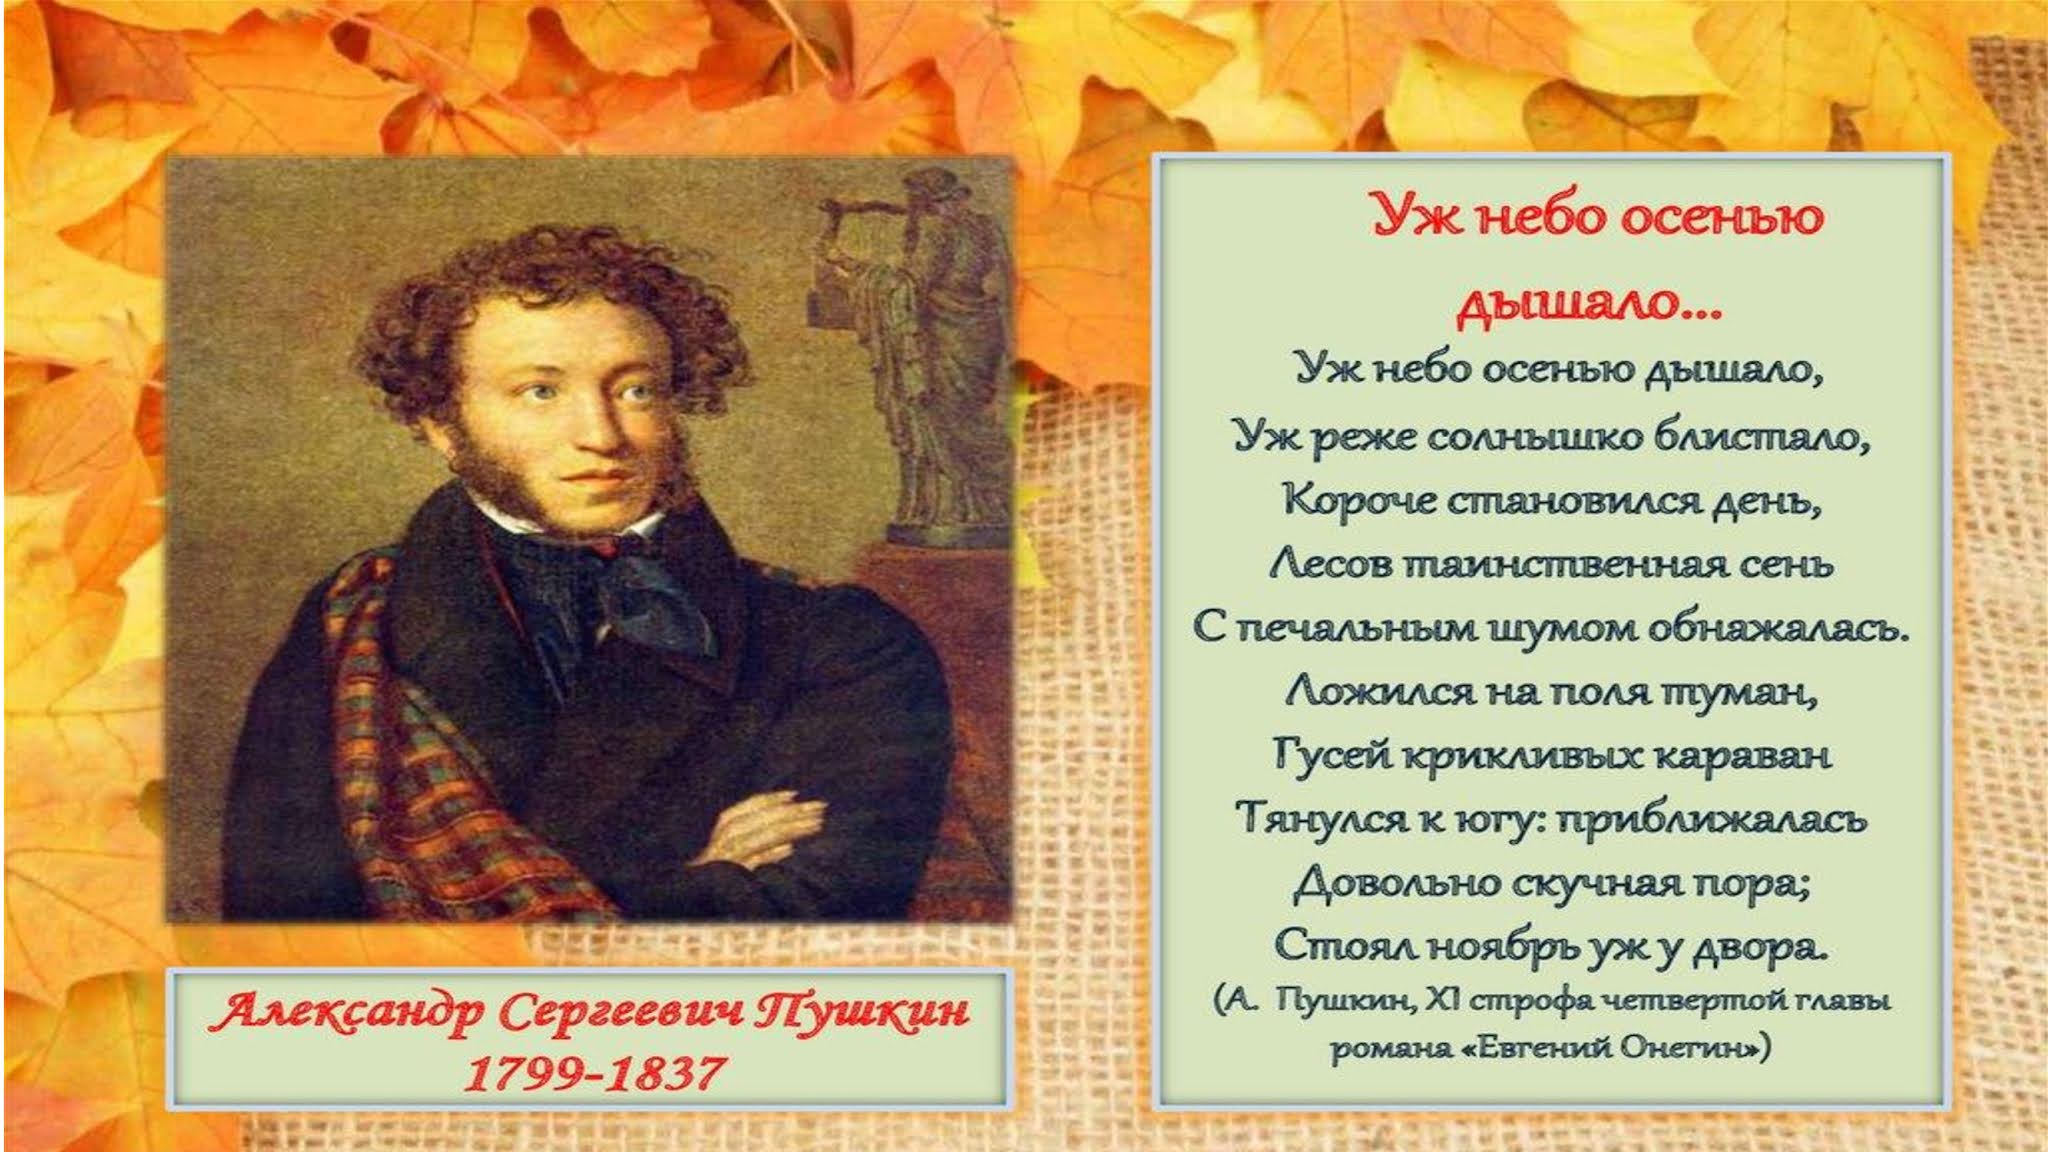 Пушкин плещееву. Стихи Пушкина про осень.